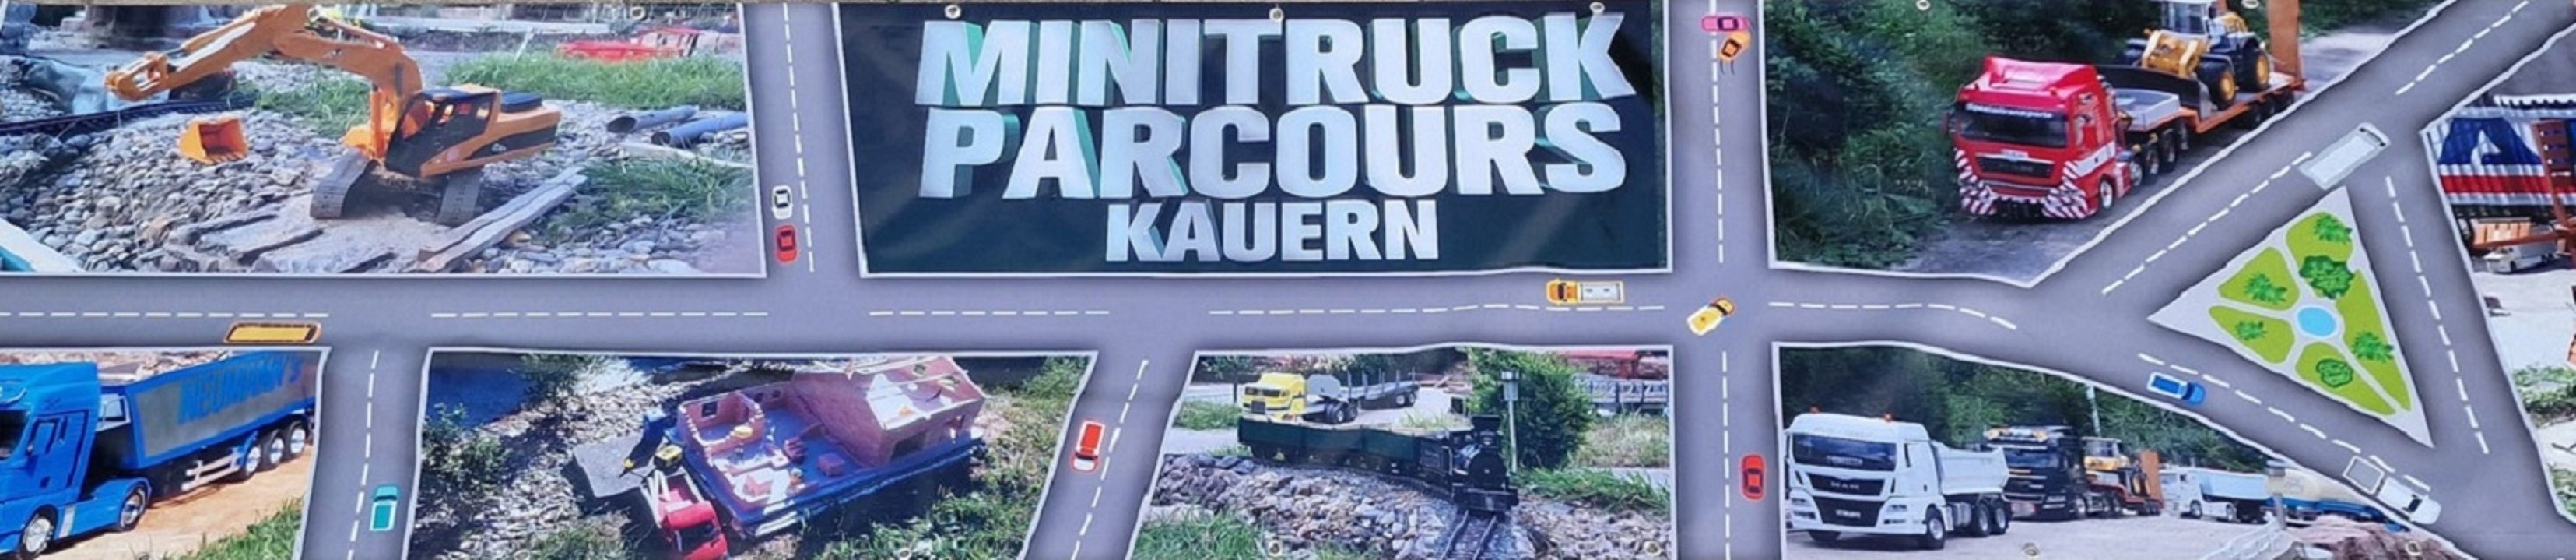 Minitruckparcours Kauern - werde Mitglied !